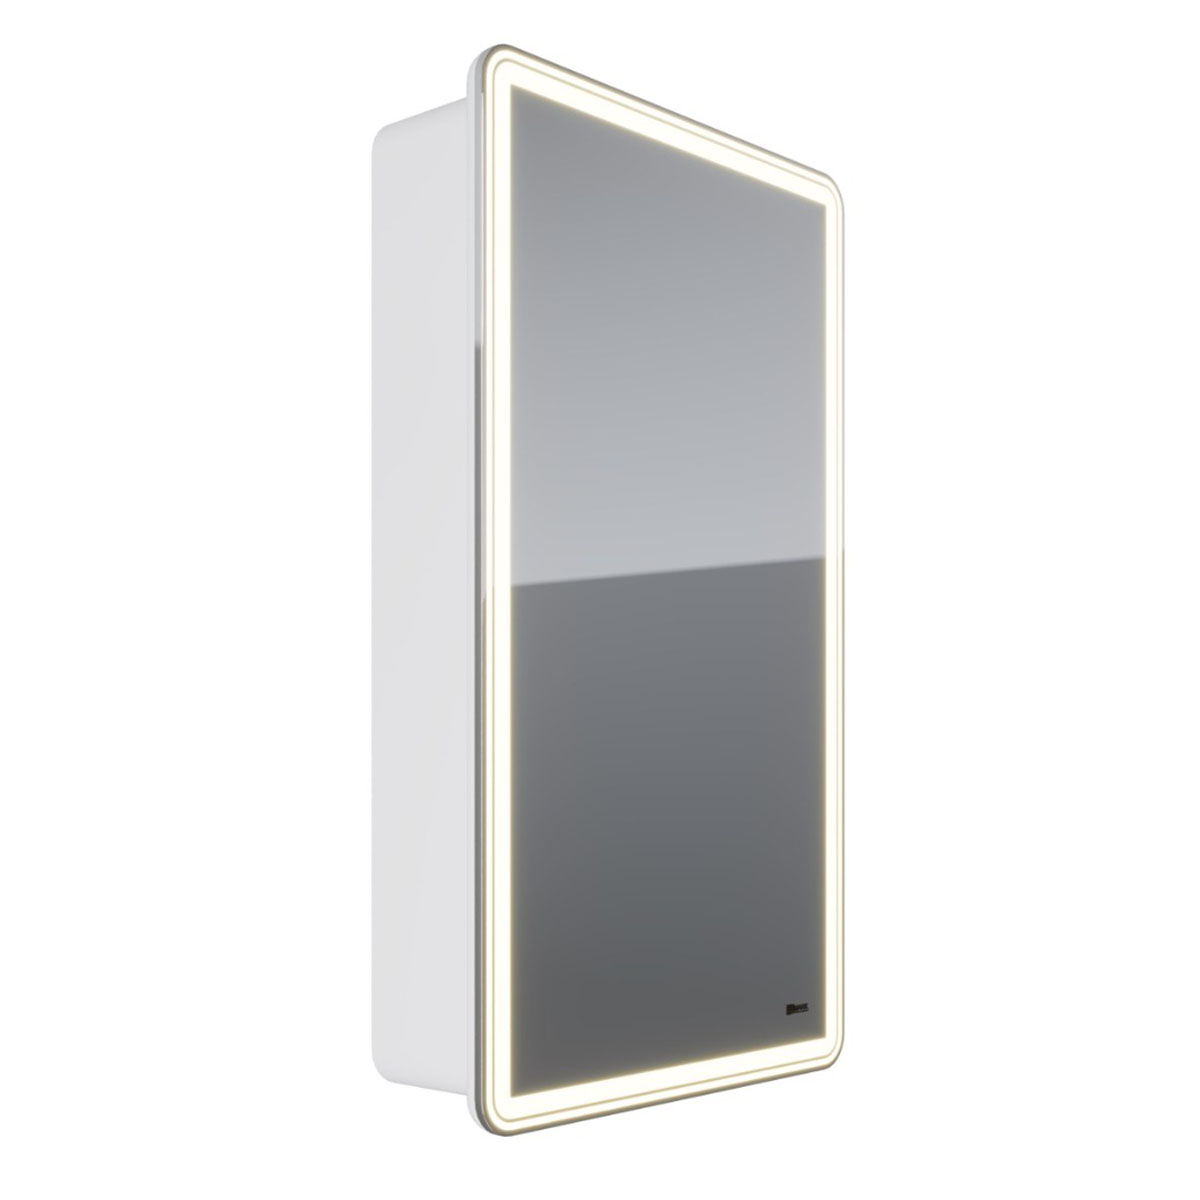 Шкаф зеркальный Lemark ELEMENT 45х80 см 1 дверный, петли справа, с подсветкой, с розеткой, цвет корпуса: Белый